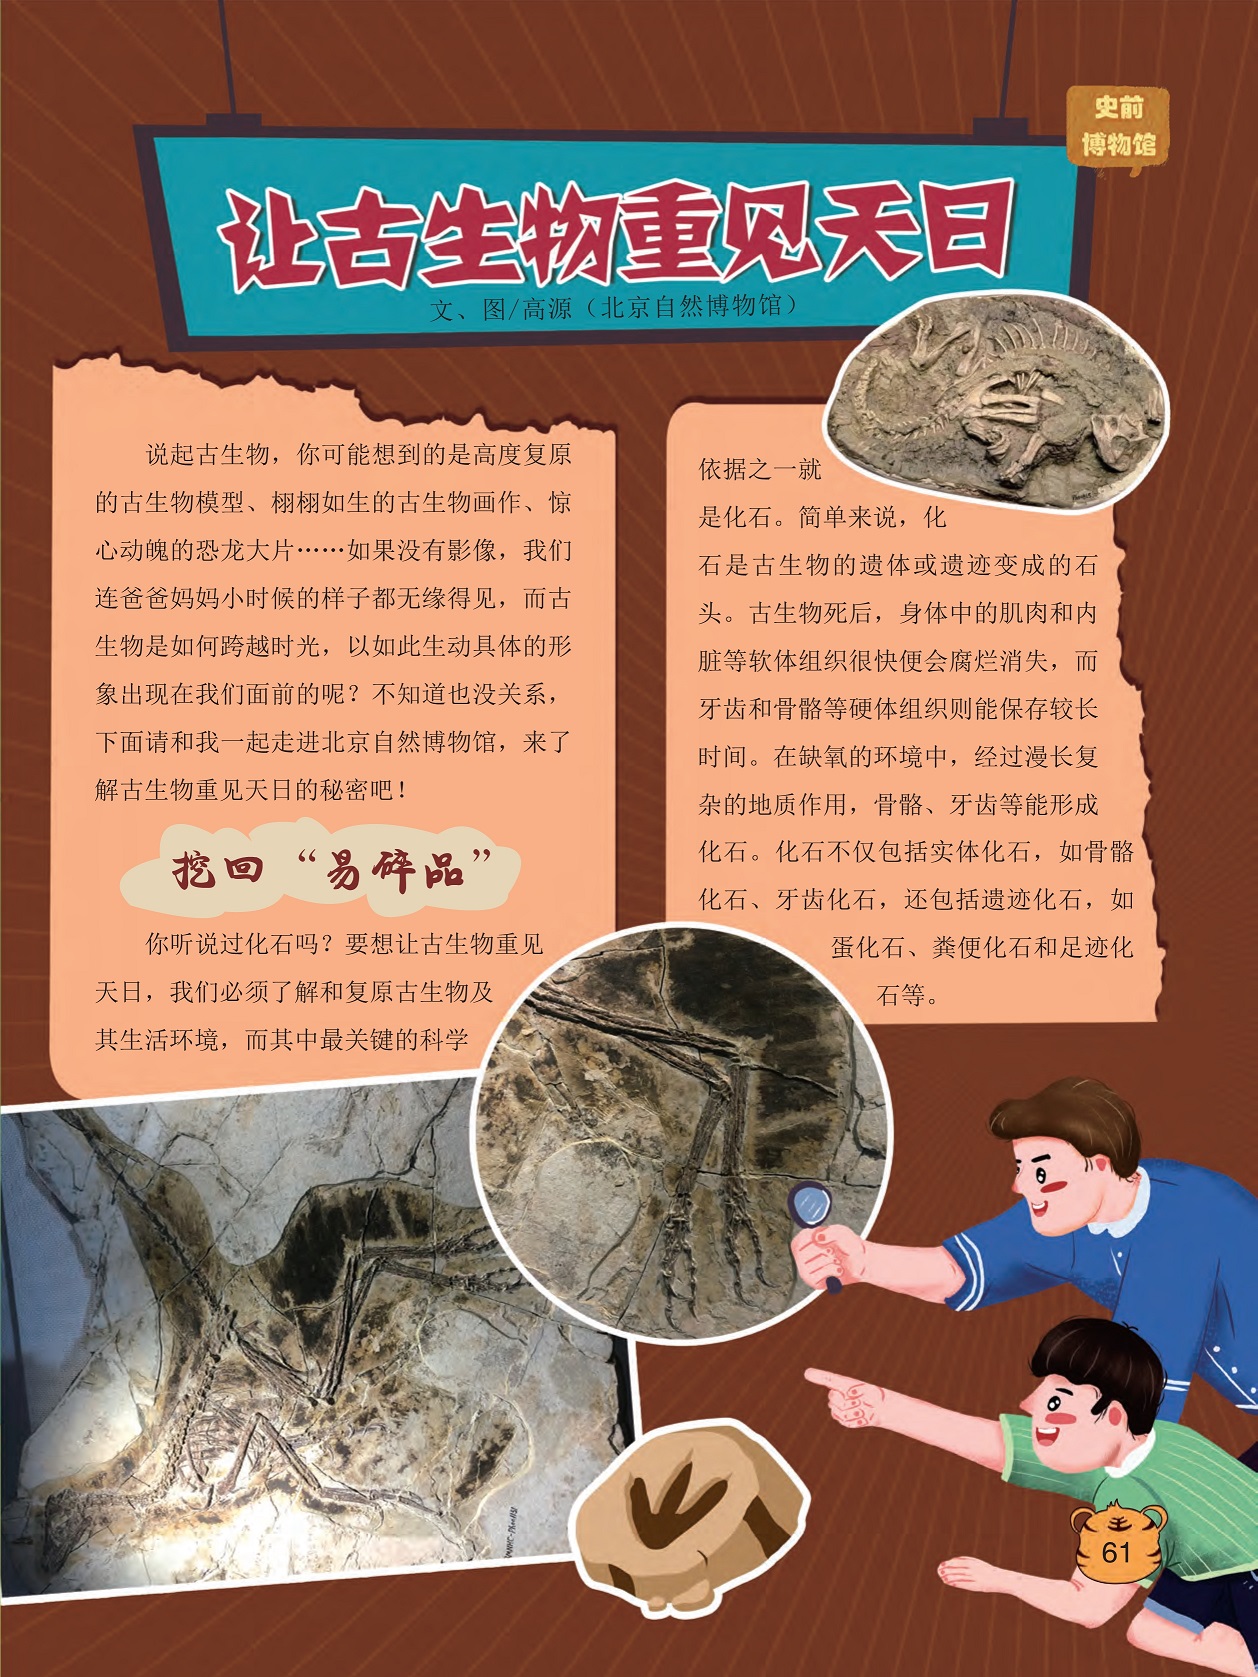 一起走进北京自然博物馆,化石是古生物的遗体或遗迹变成的石头